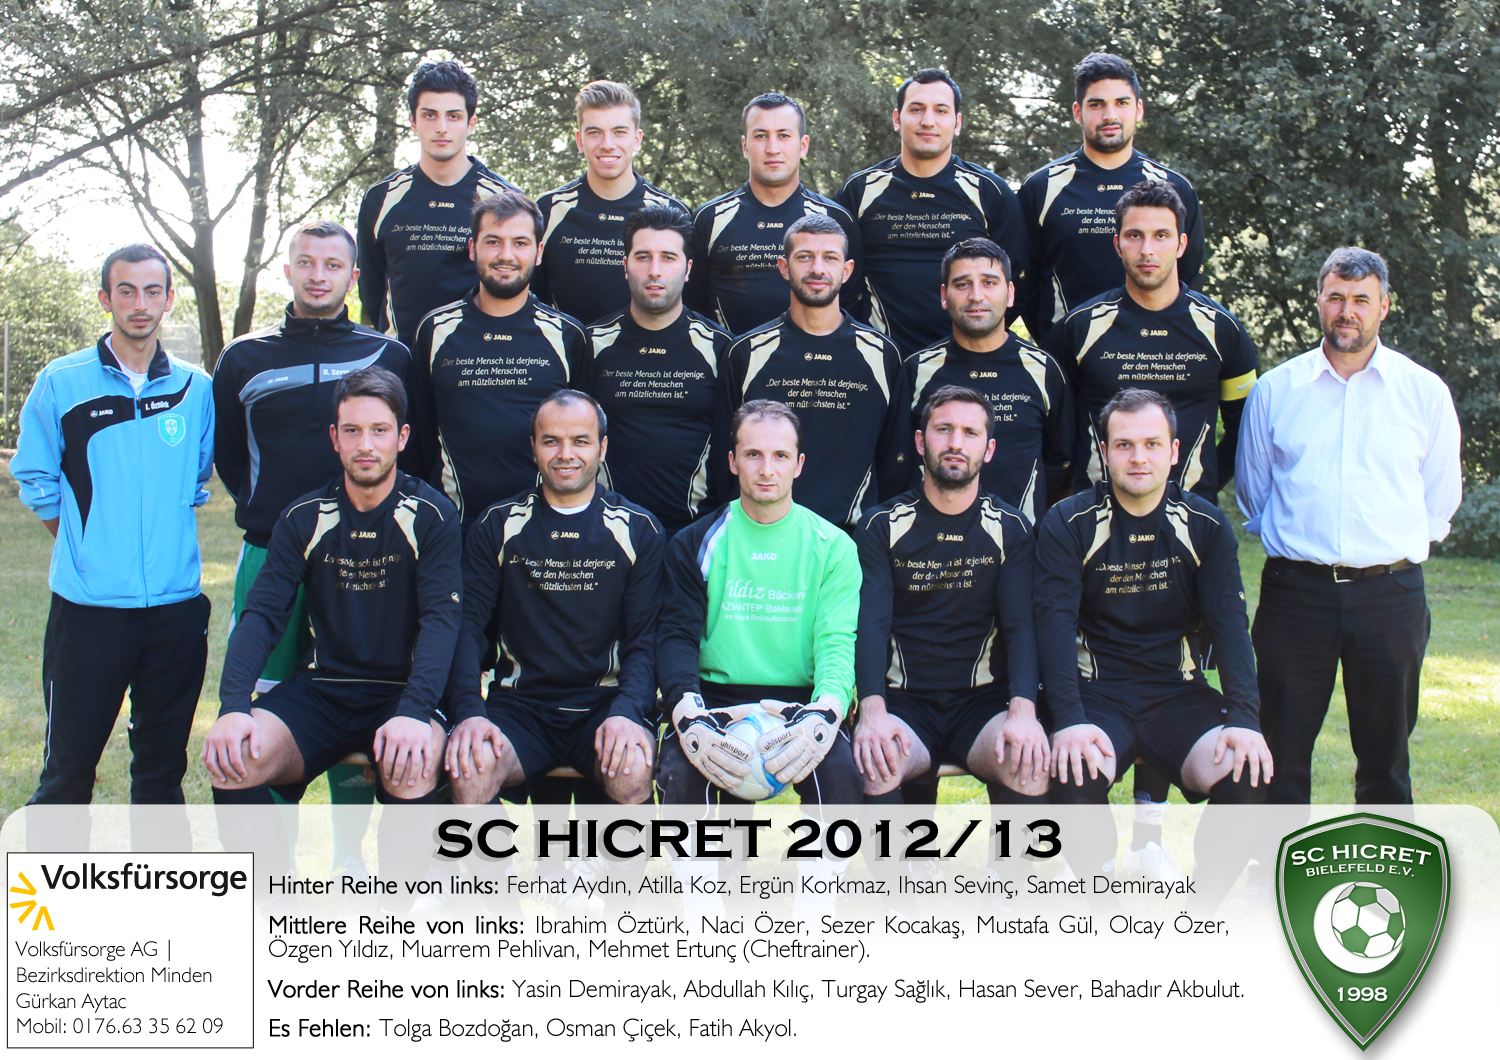 Mannschaftsfoto/Teamfoto von SC Hicret Bielefeld